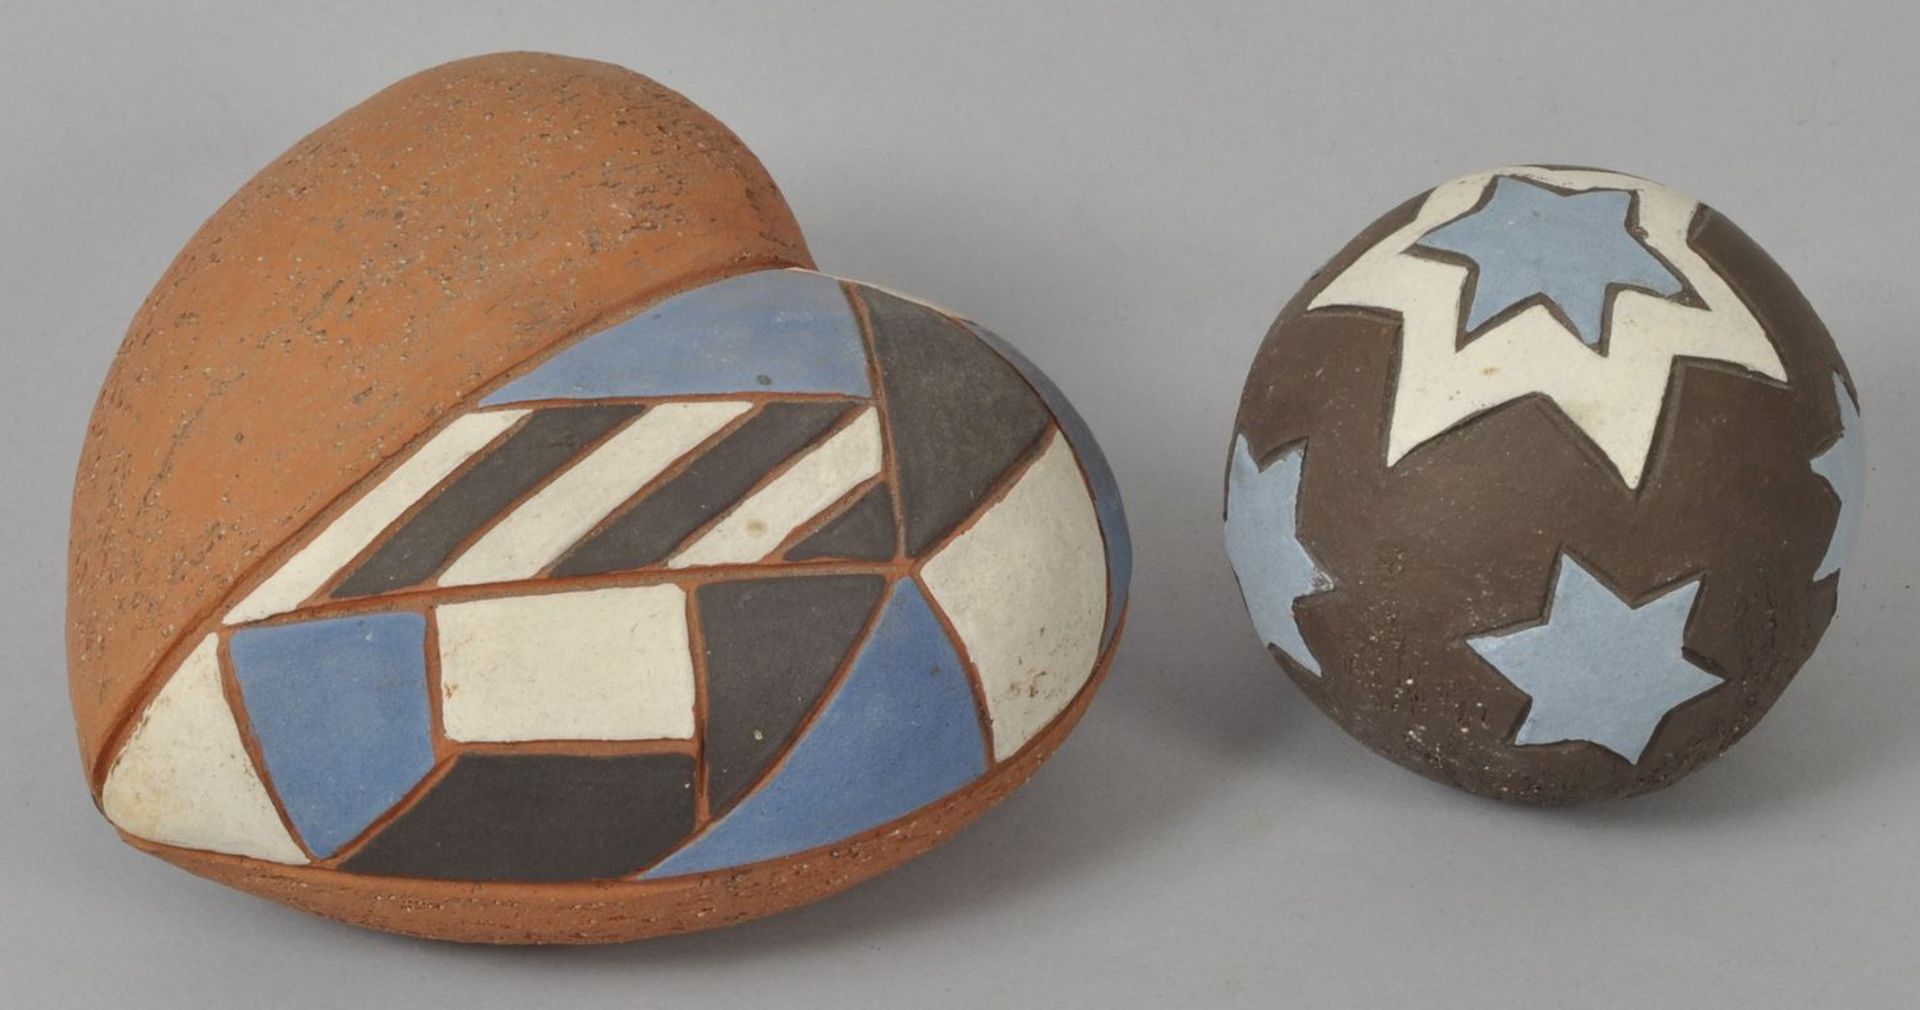 Zwei dekorative Keramik-Teile, 2. H. 20. Jh.Keramik/Ton, Ritzdekor in Sternform bzw. geometrisch,